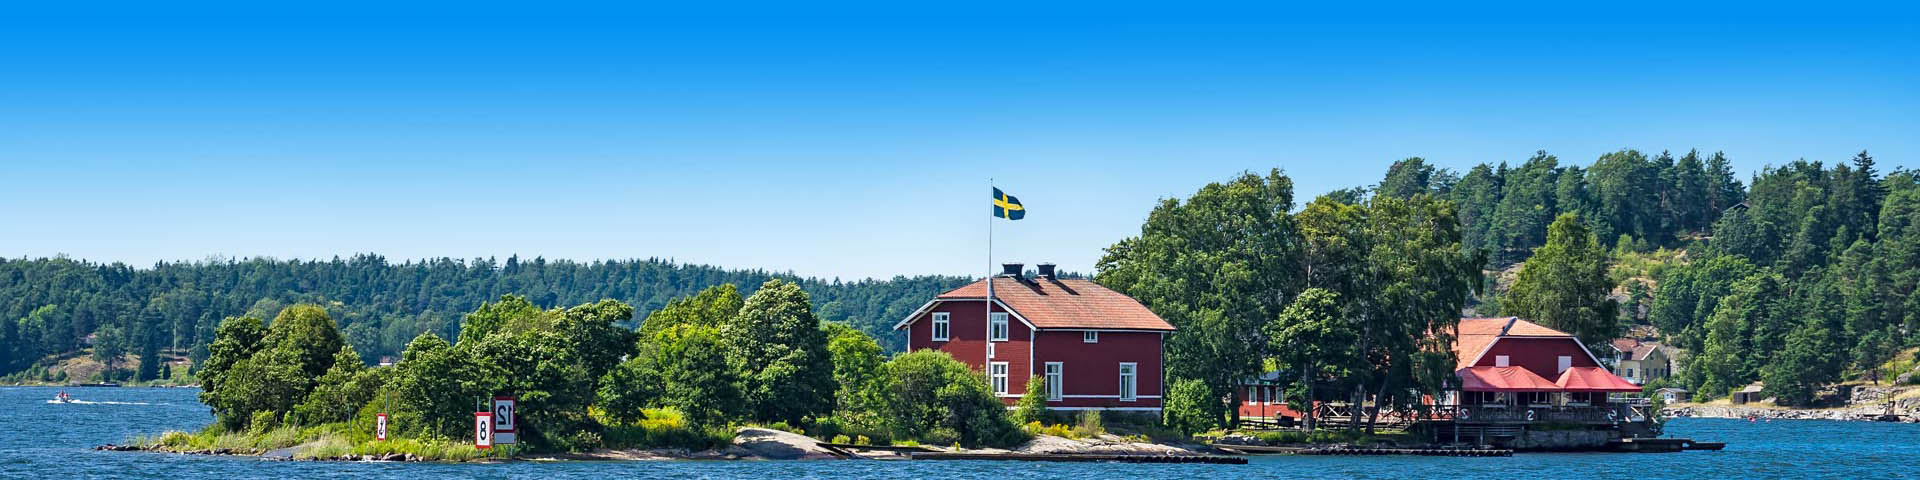 Groen landschap in Zweden